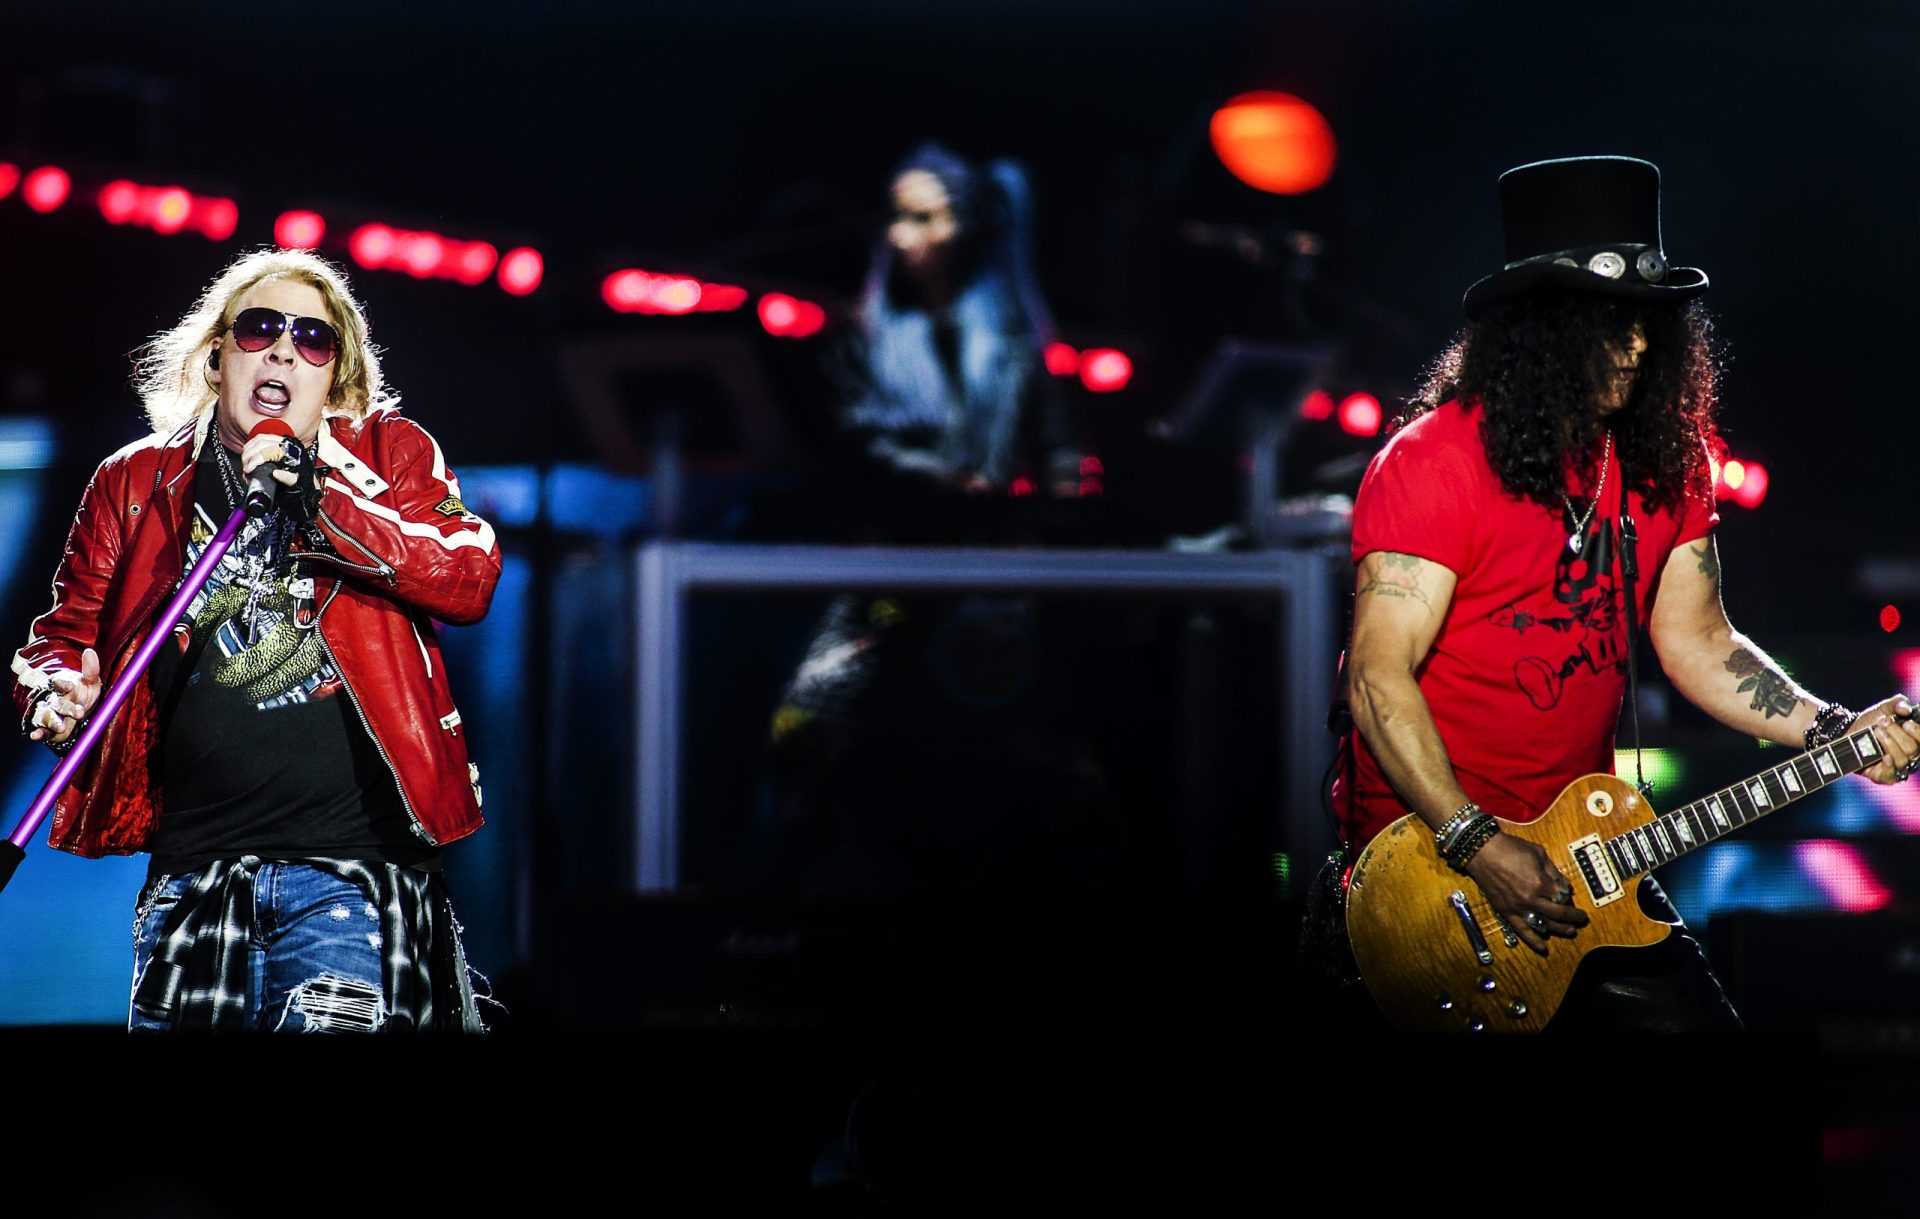 As imagens do concerto dos Guns N’ Roses em Lisboa [fotogaleria]